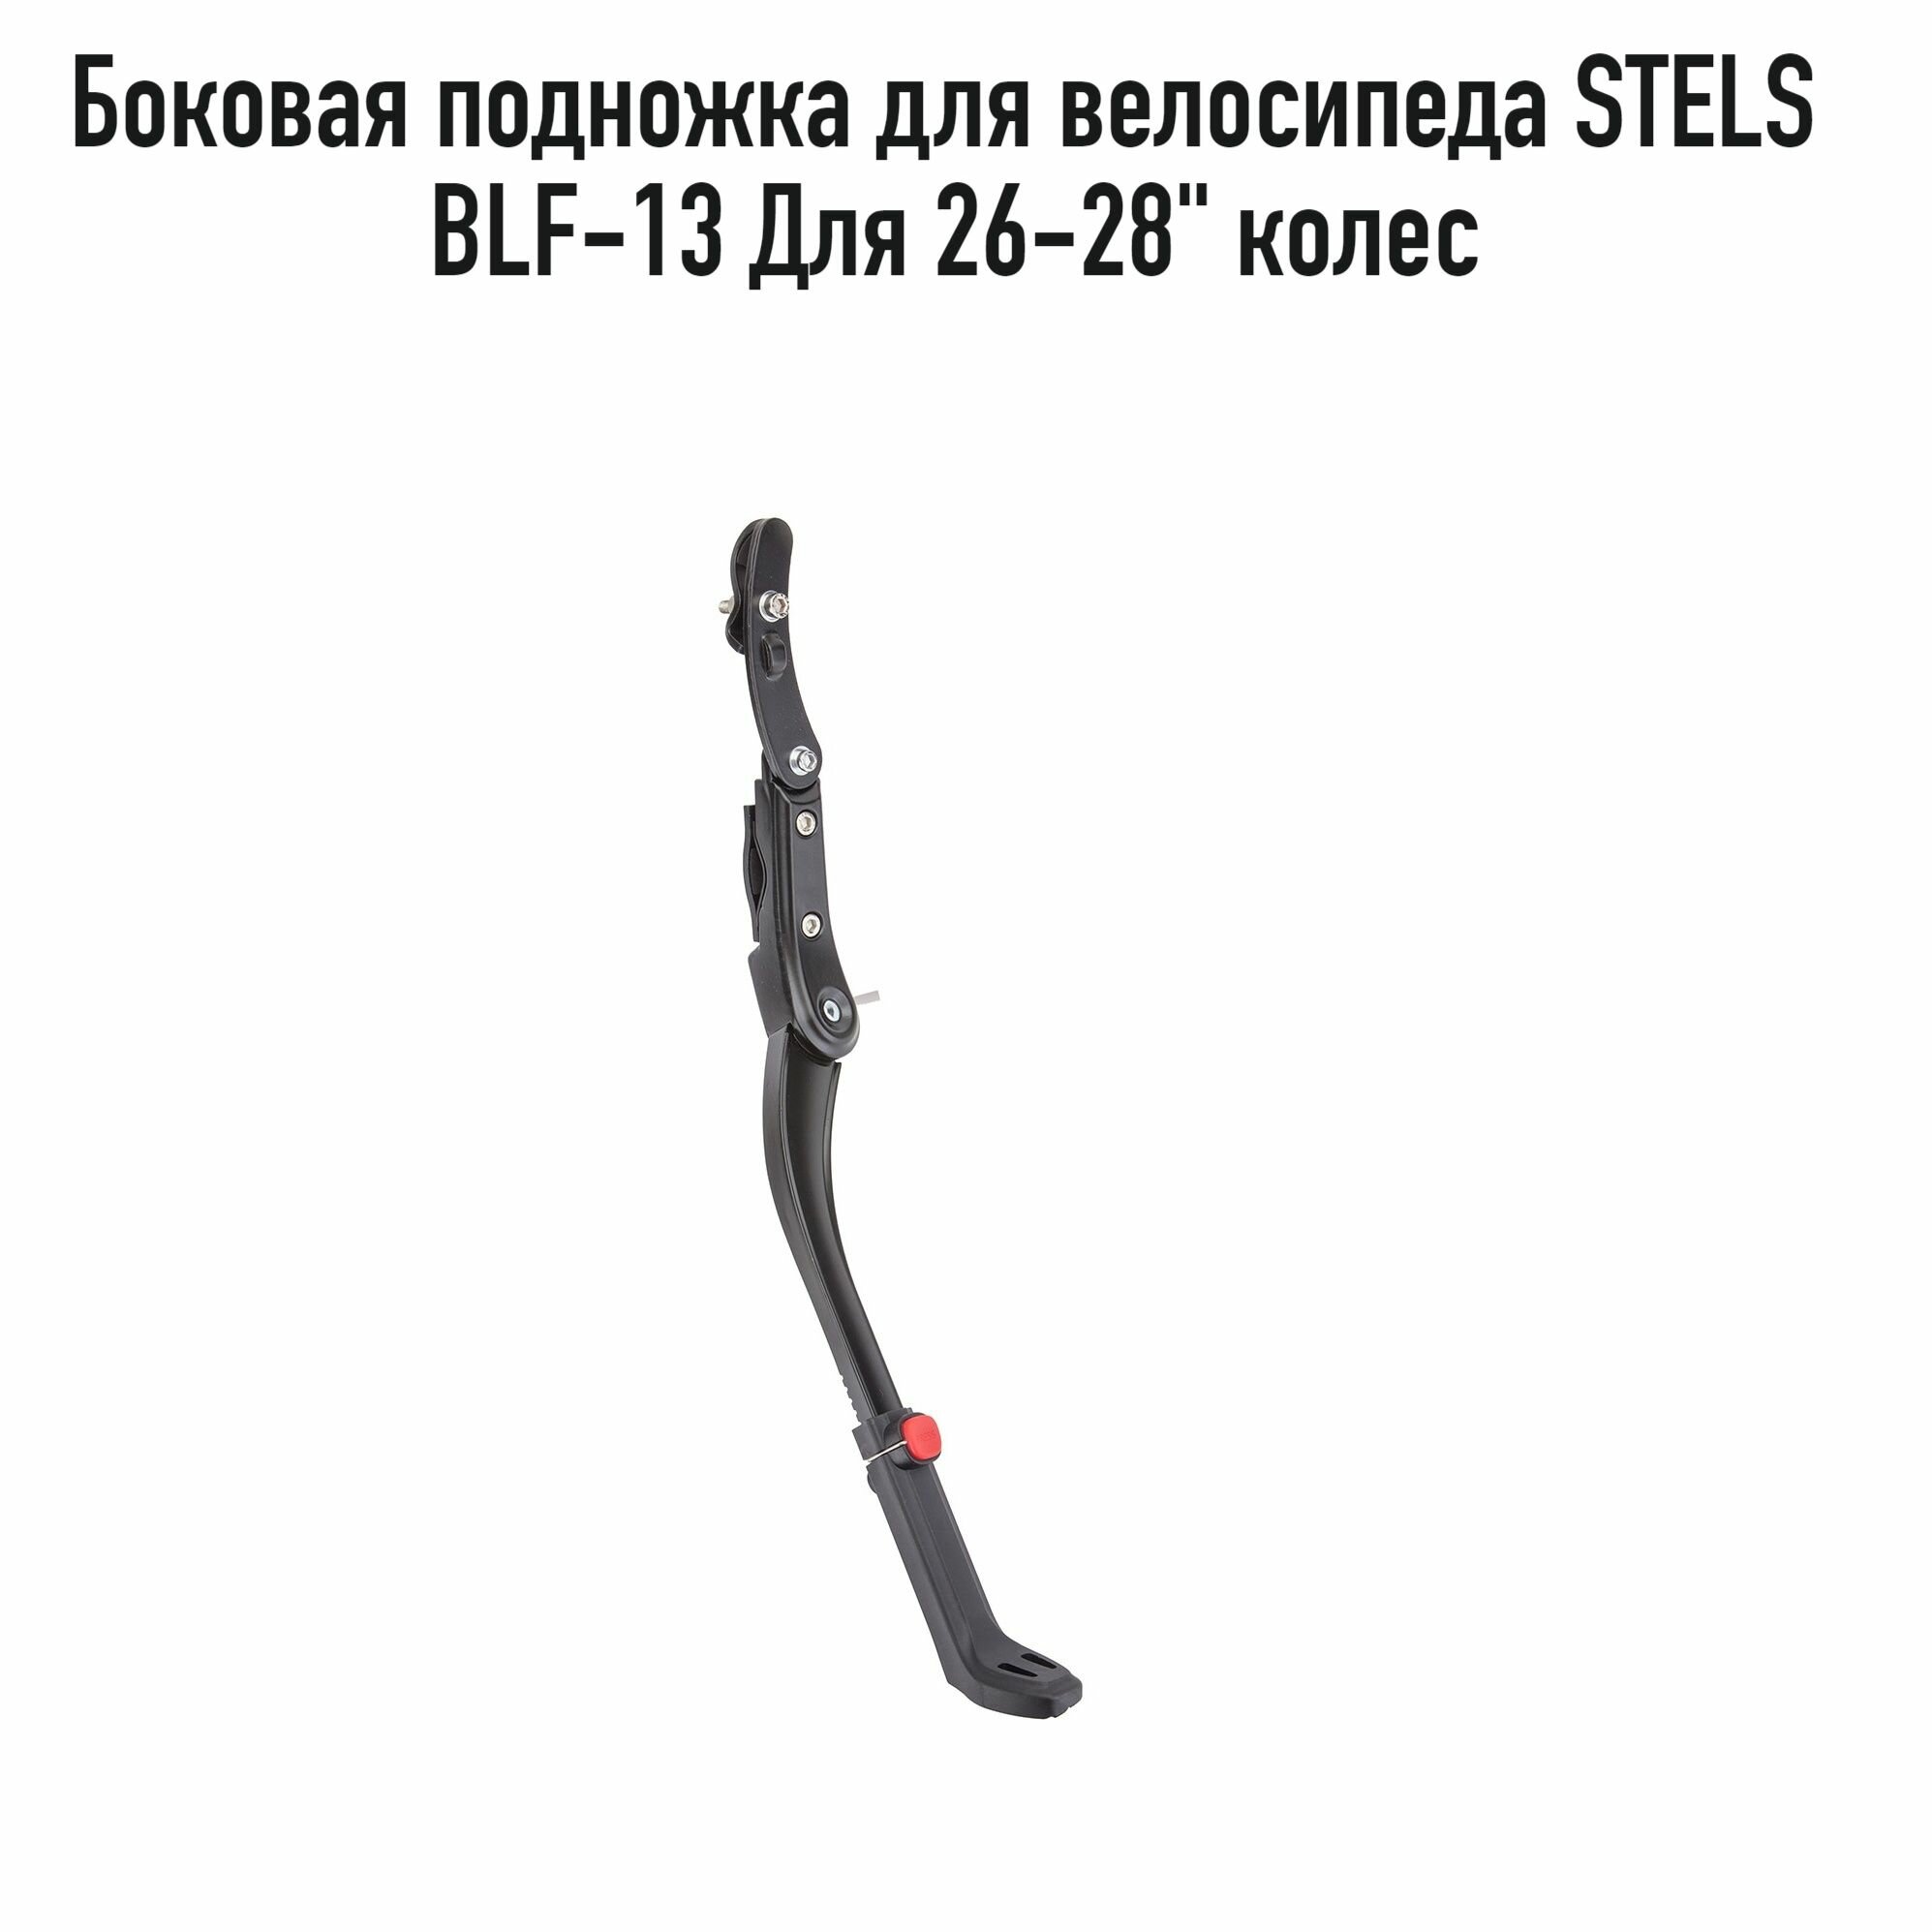 Подножка для велосипеда STELS BLF-F13, боковая, алюминий, для 26-28" колес, арт. 390080